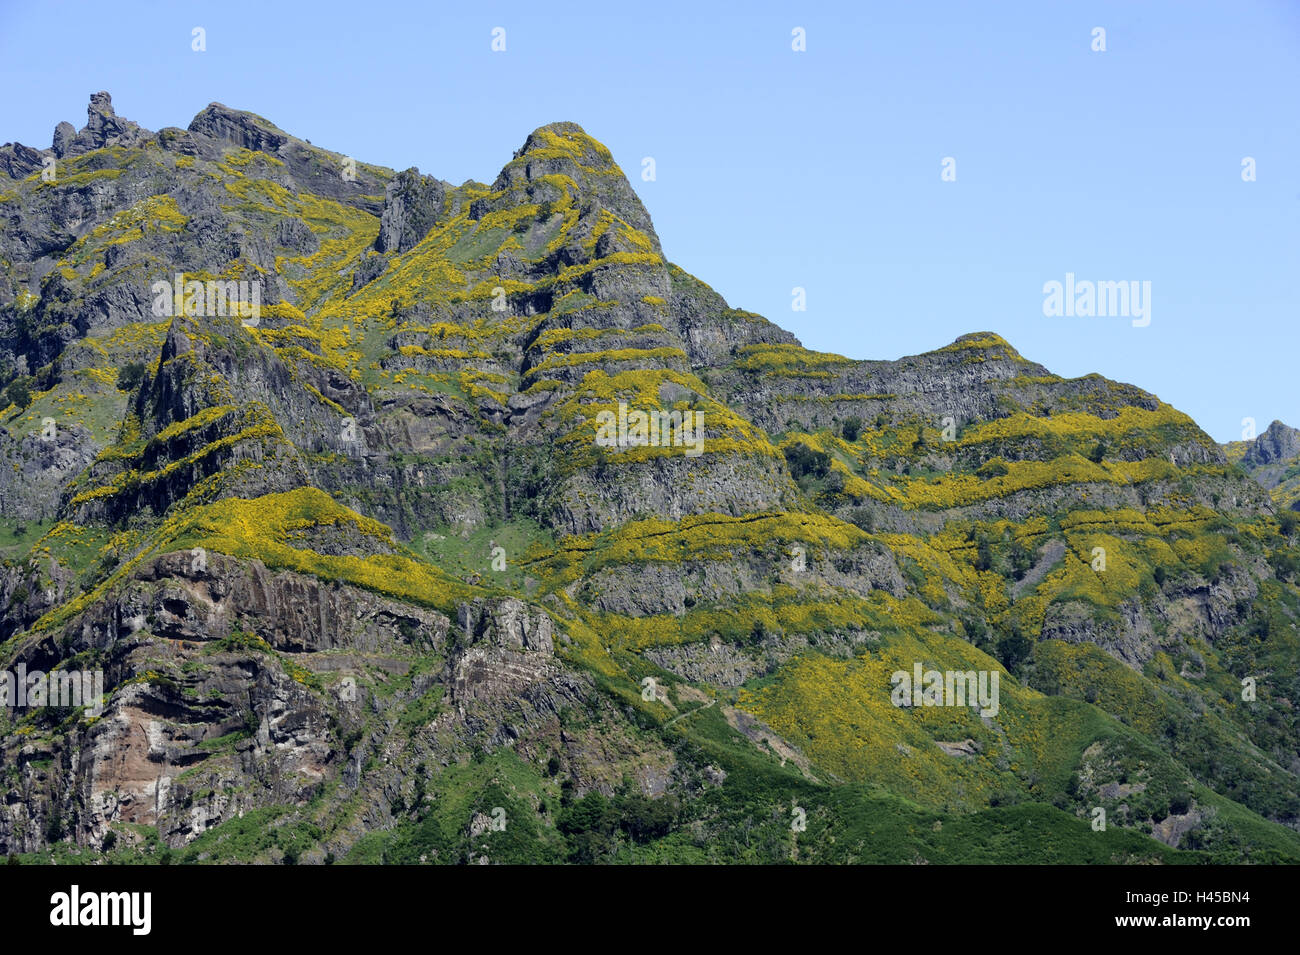 Portugal, la isla de Madeira, montañas, rocas, vegetación, Foto de stock